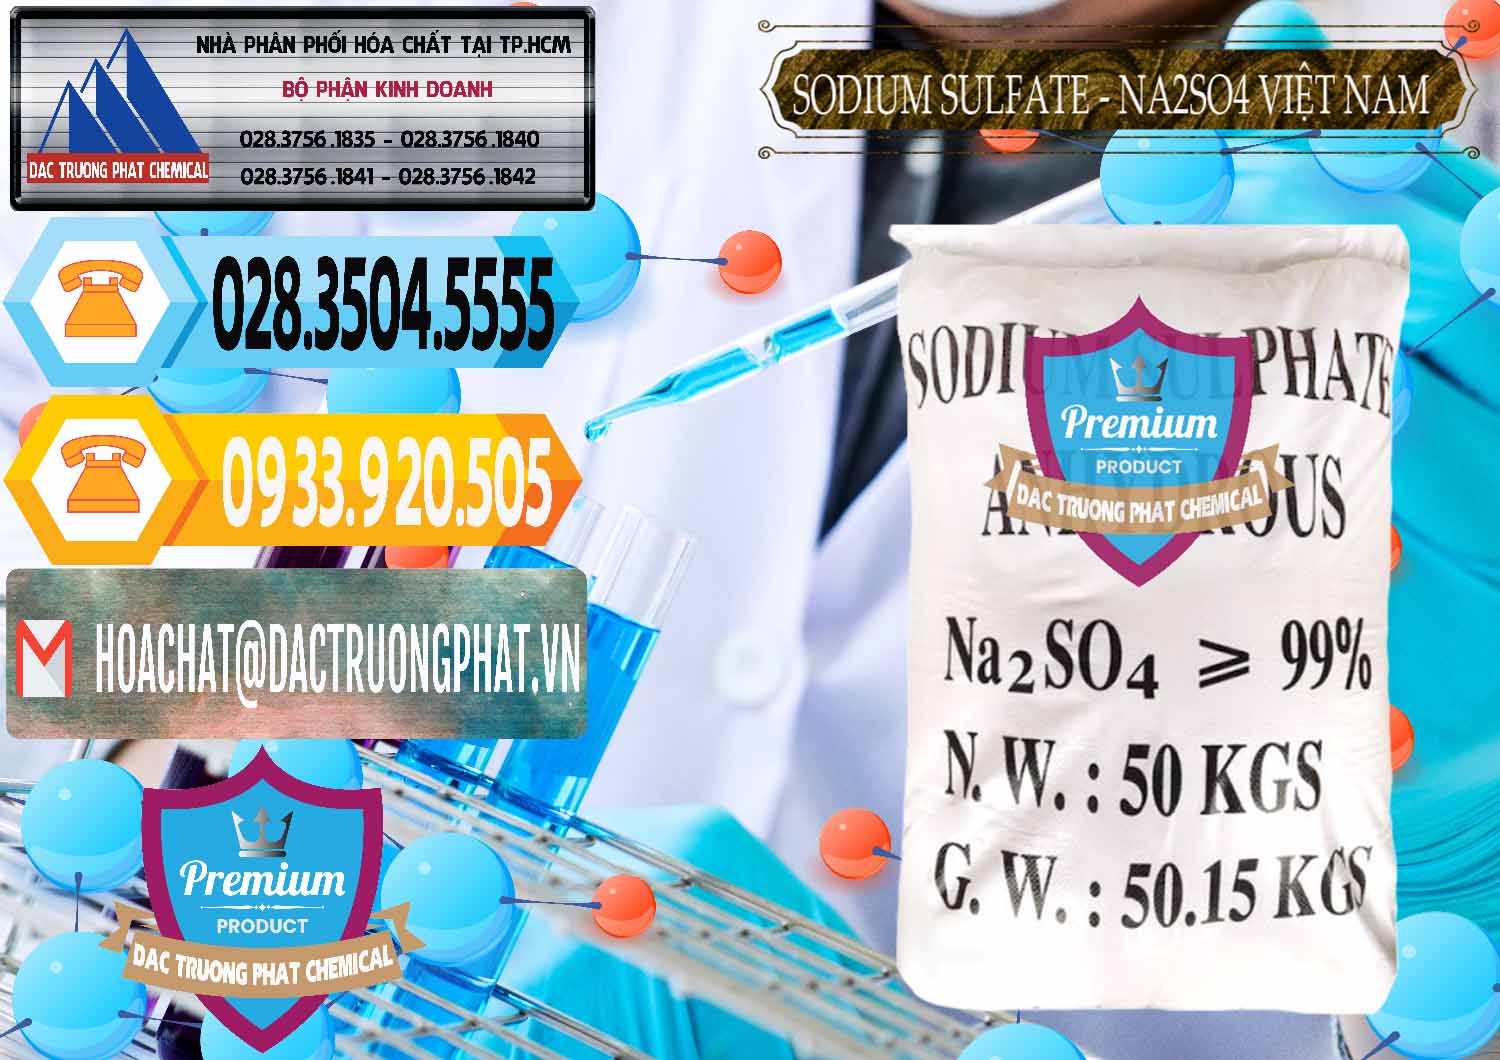 Công ty chuyên kinh doanh và bán Sodium Sulphate - Muối Sunfat Na2SO4 Việt Nam - 0355 - Cty cung cấp - kinh doanh hóa chất tại TP.HCM - hoachattayrua.net